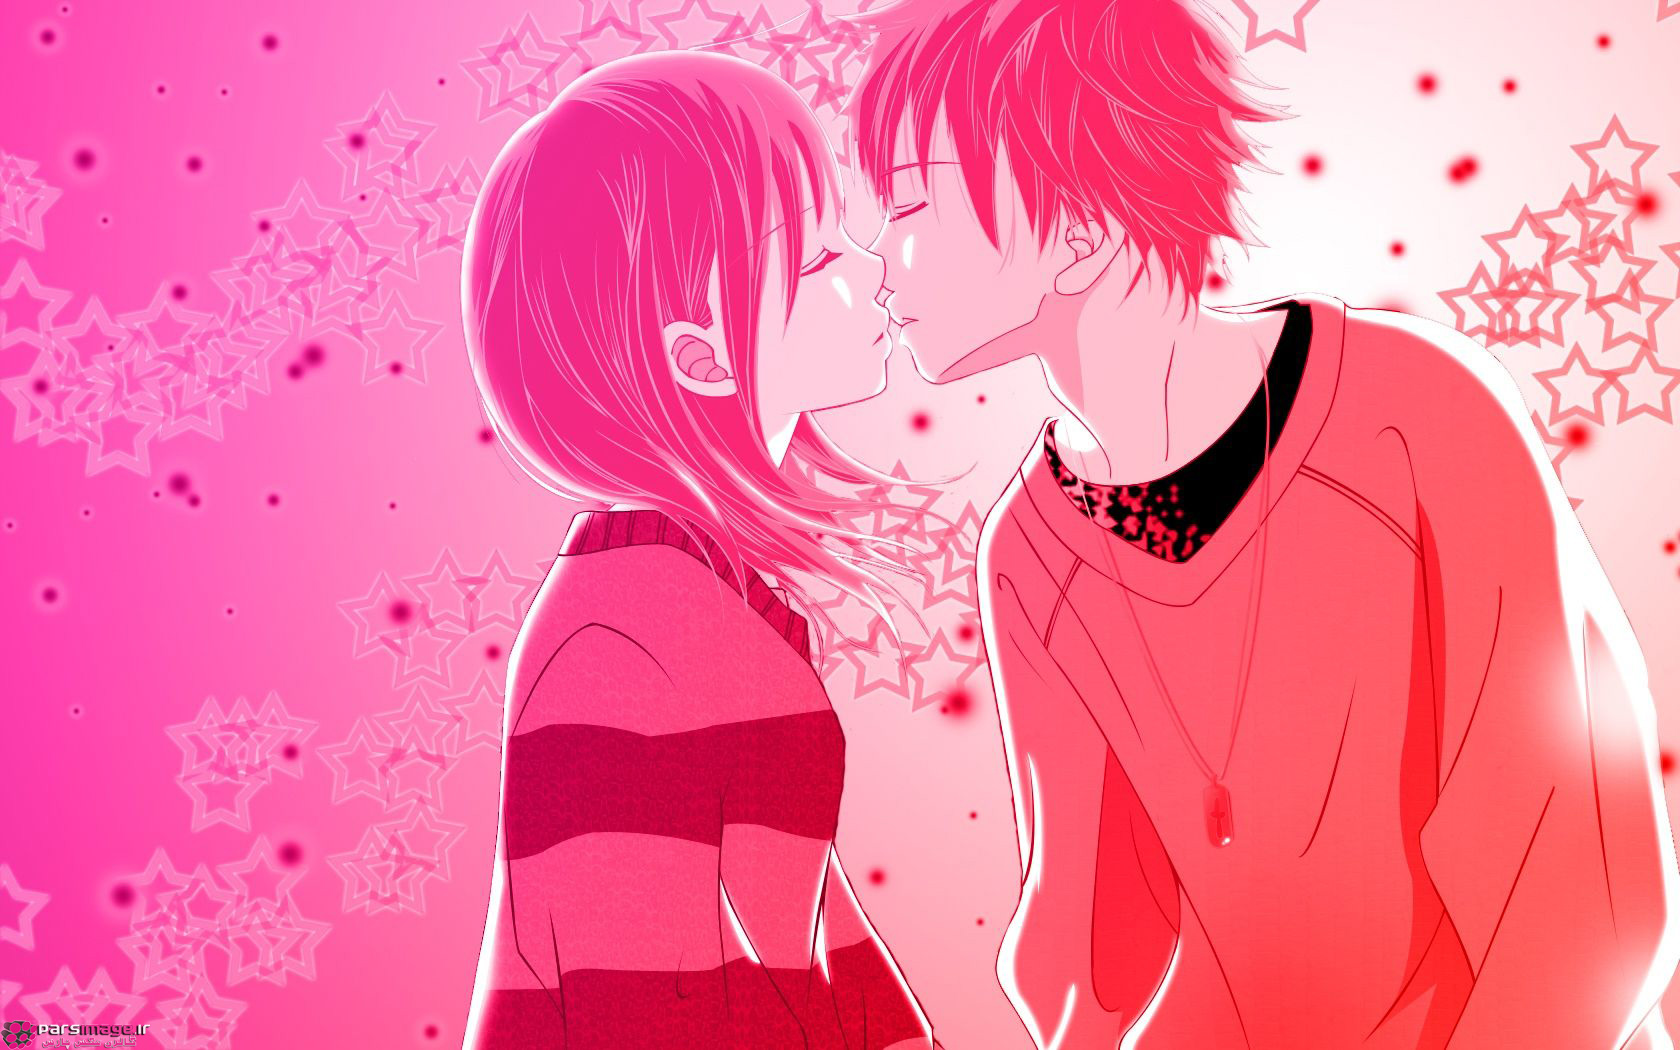 Hãy ngắm nhìn bức ảnh tình nhân anime trong ngày Valentine này, chắc chắn sẽ làm bạn tan chảy với sự ngọt ngào hoàn hảo được thể hiện qua tình yêu của họ.